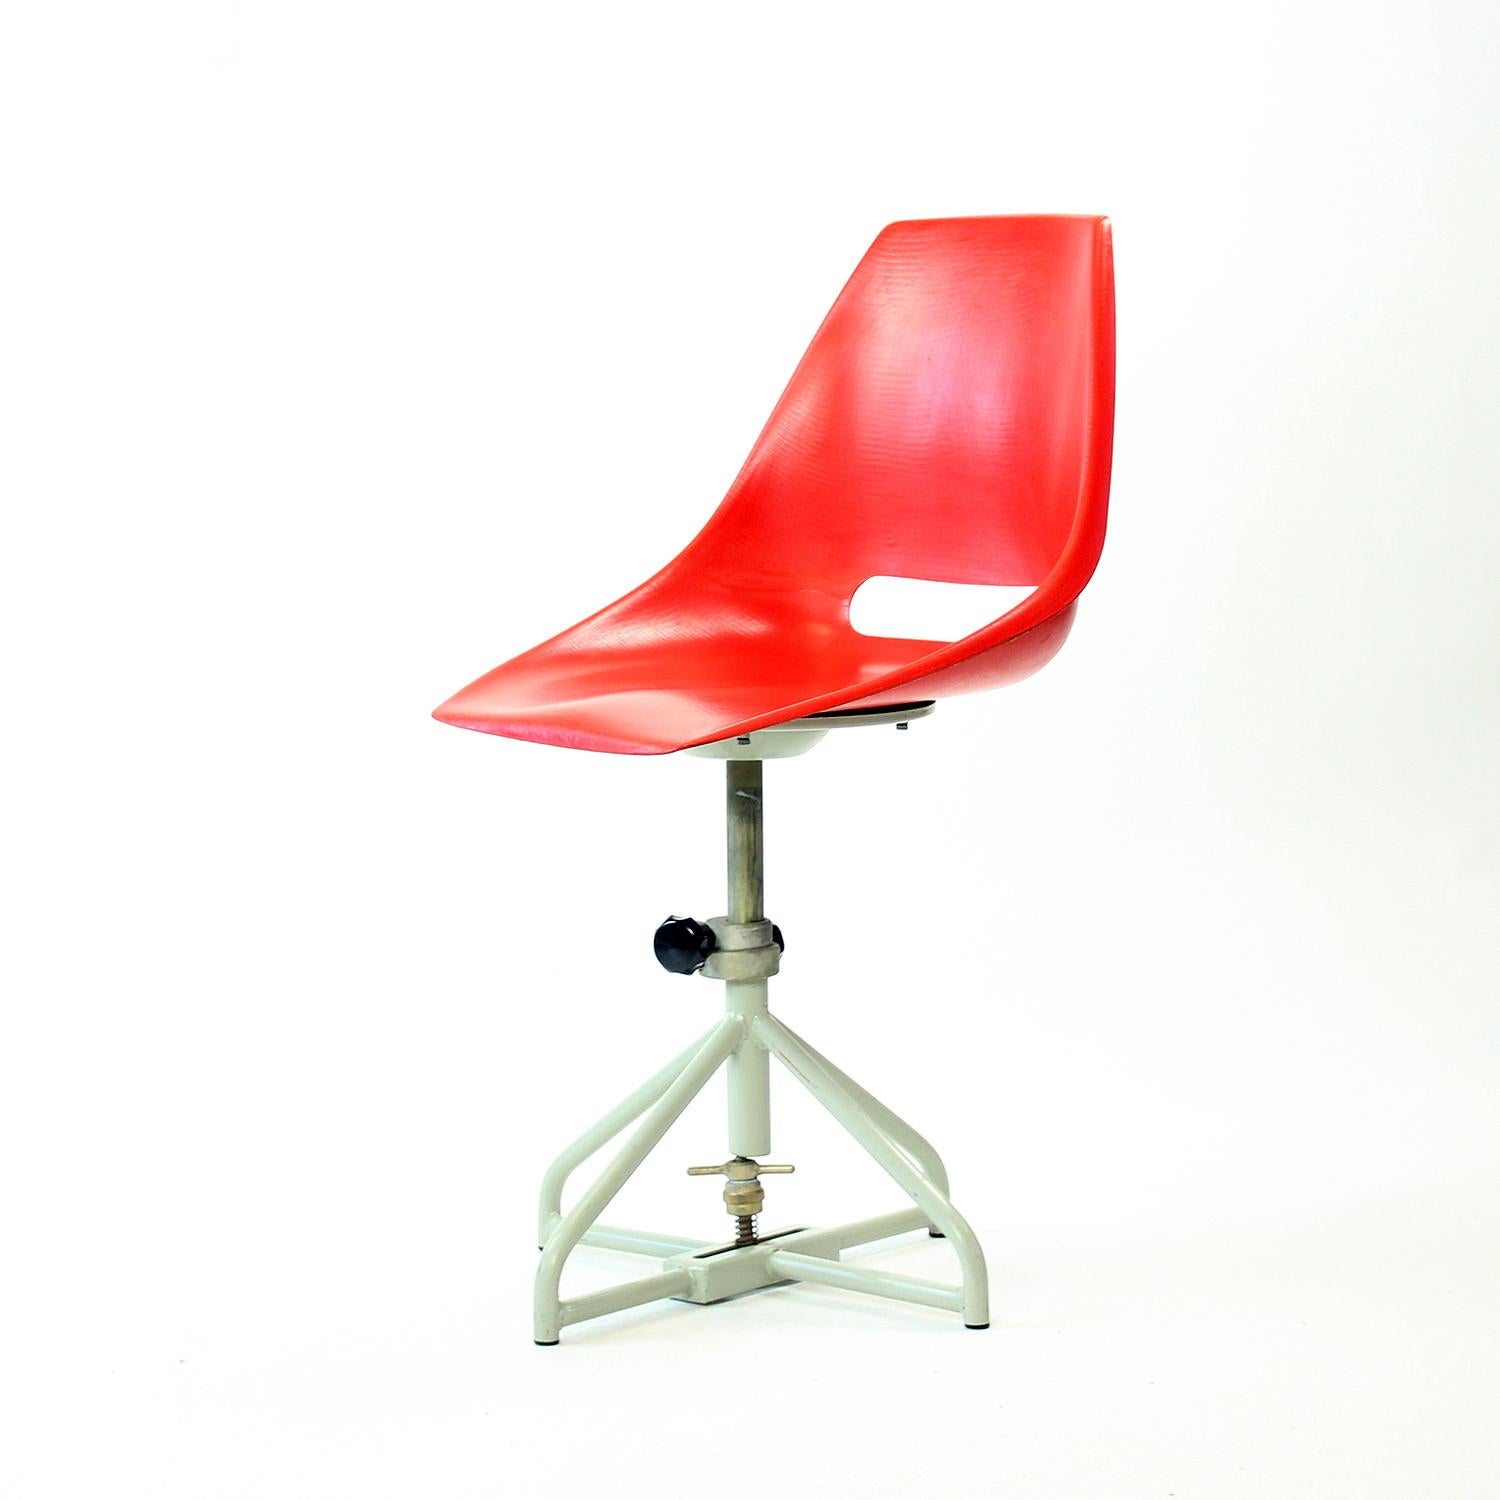 Roter Tablettstuhl von Miroslav Navratil für Vertex, 1960er Jahre (Mitte des 20. Jahrhunderts) im Angebot